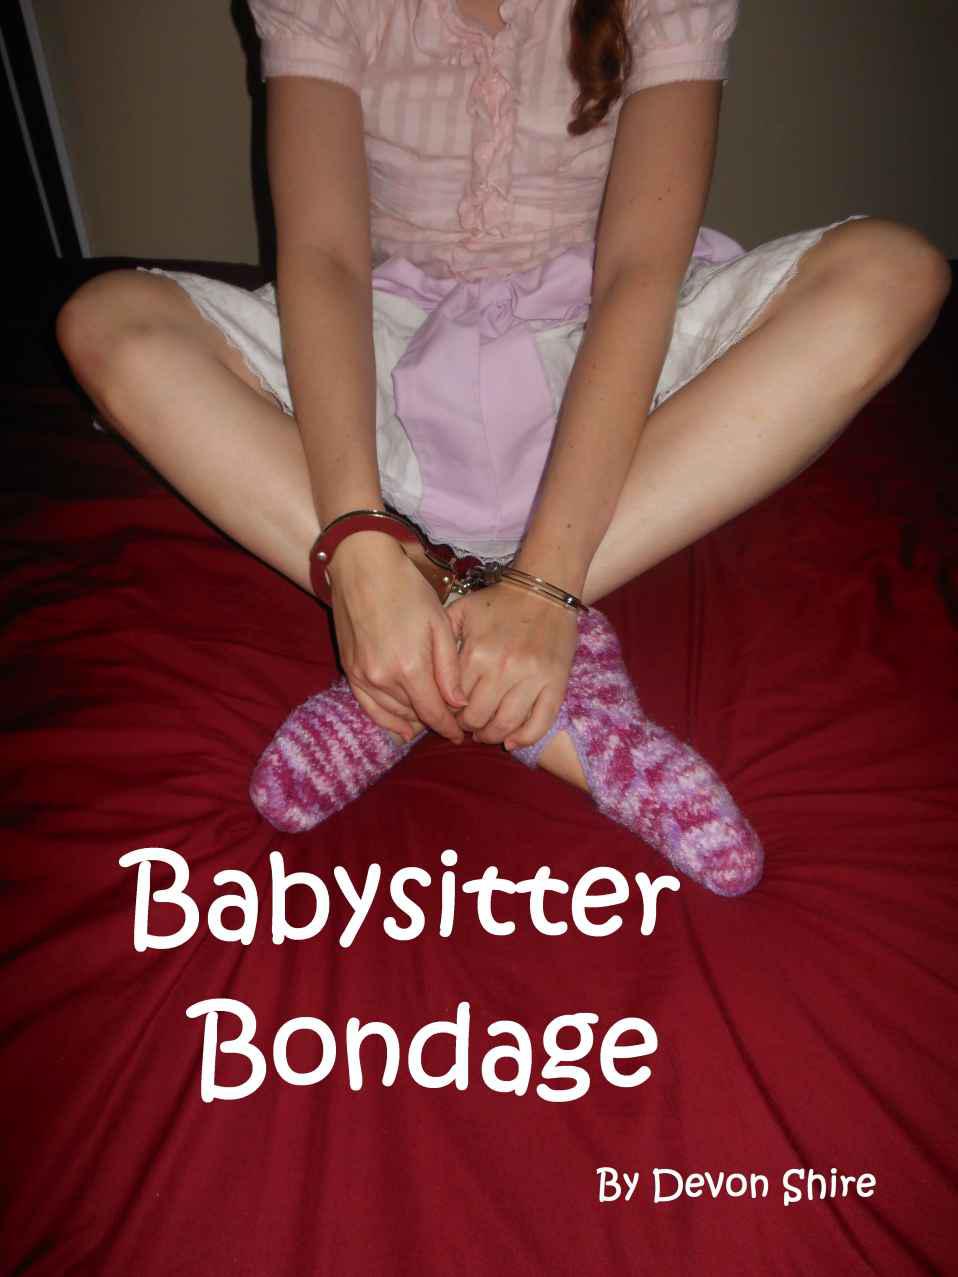 Age play bondage